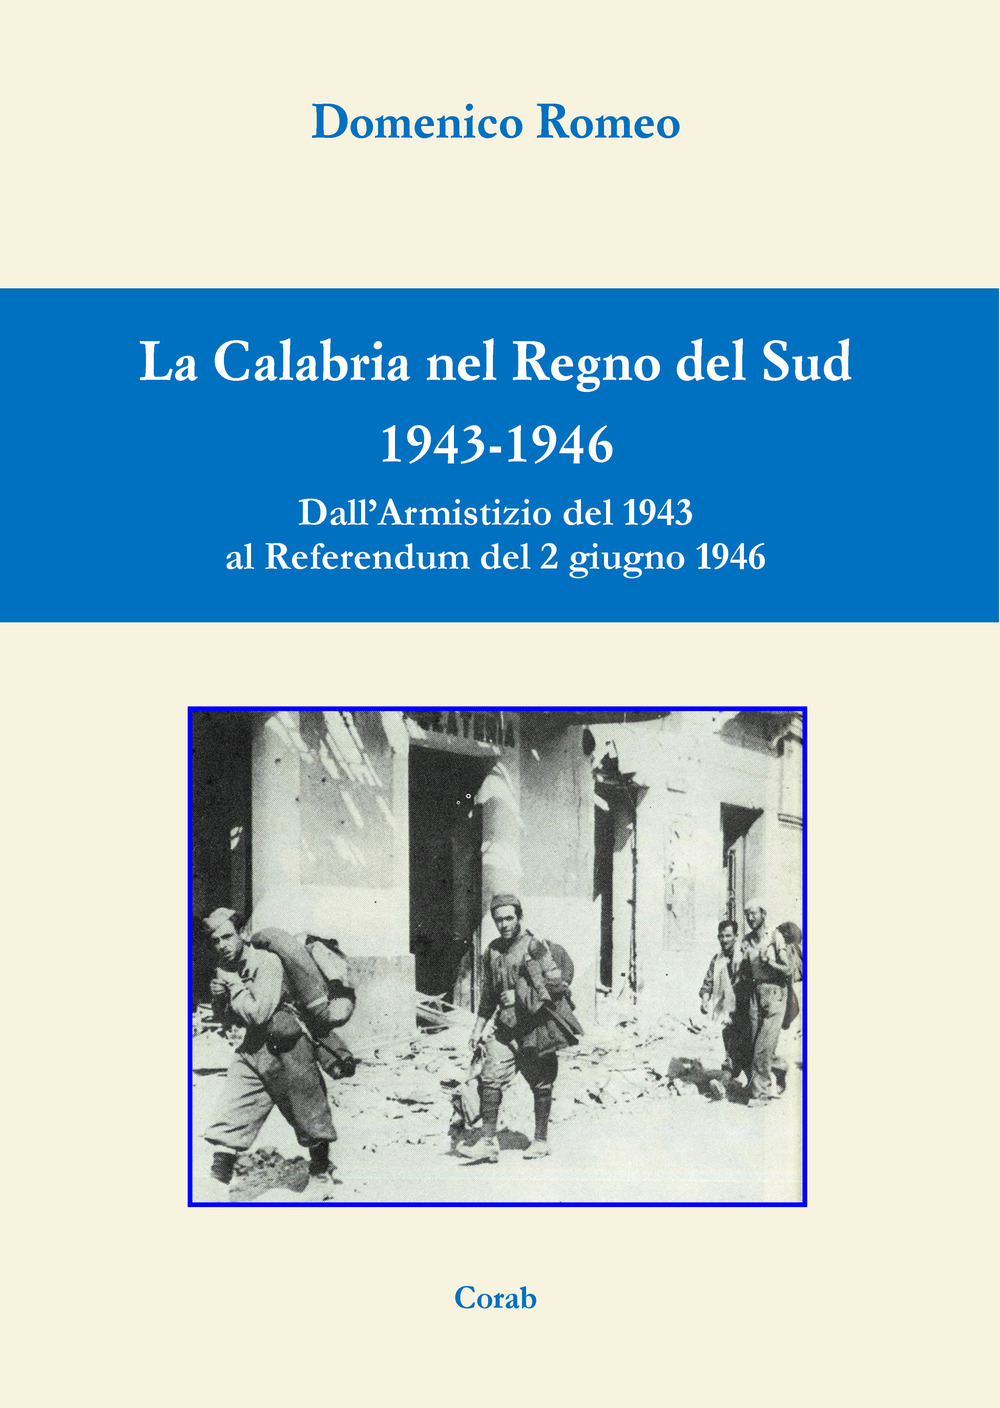 La Calabria nel Regno del Sud 1943-1946. Dall'Armistizio del 1943 al Referendum del 2 giugno 1946